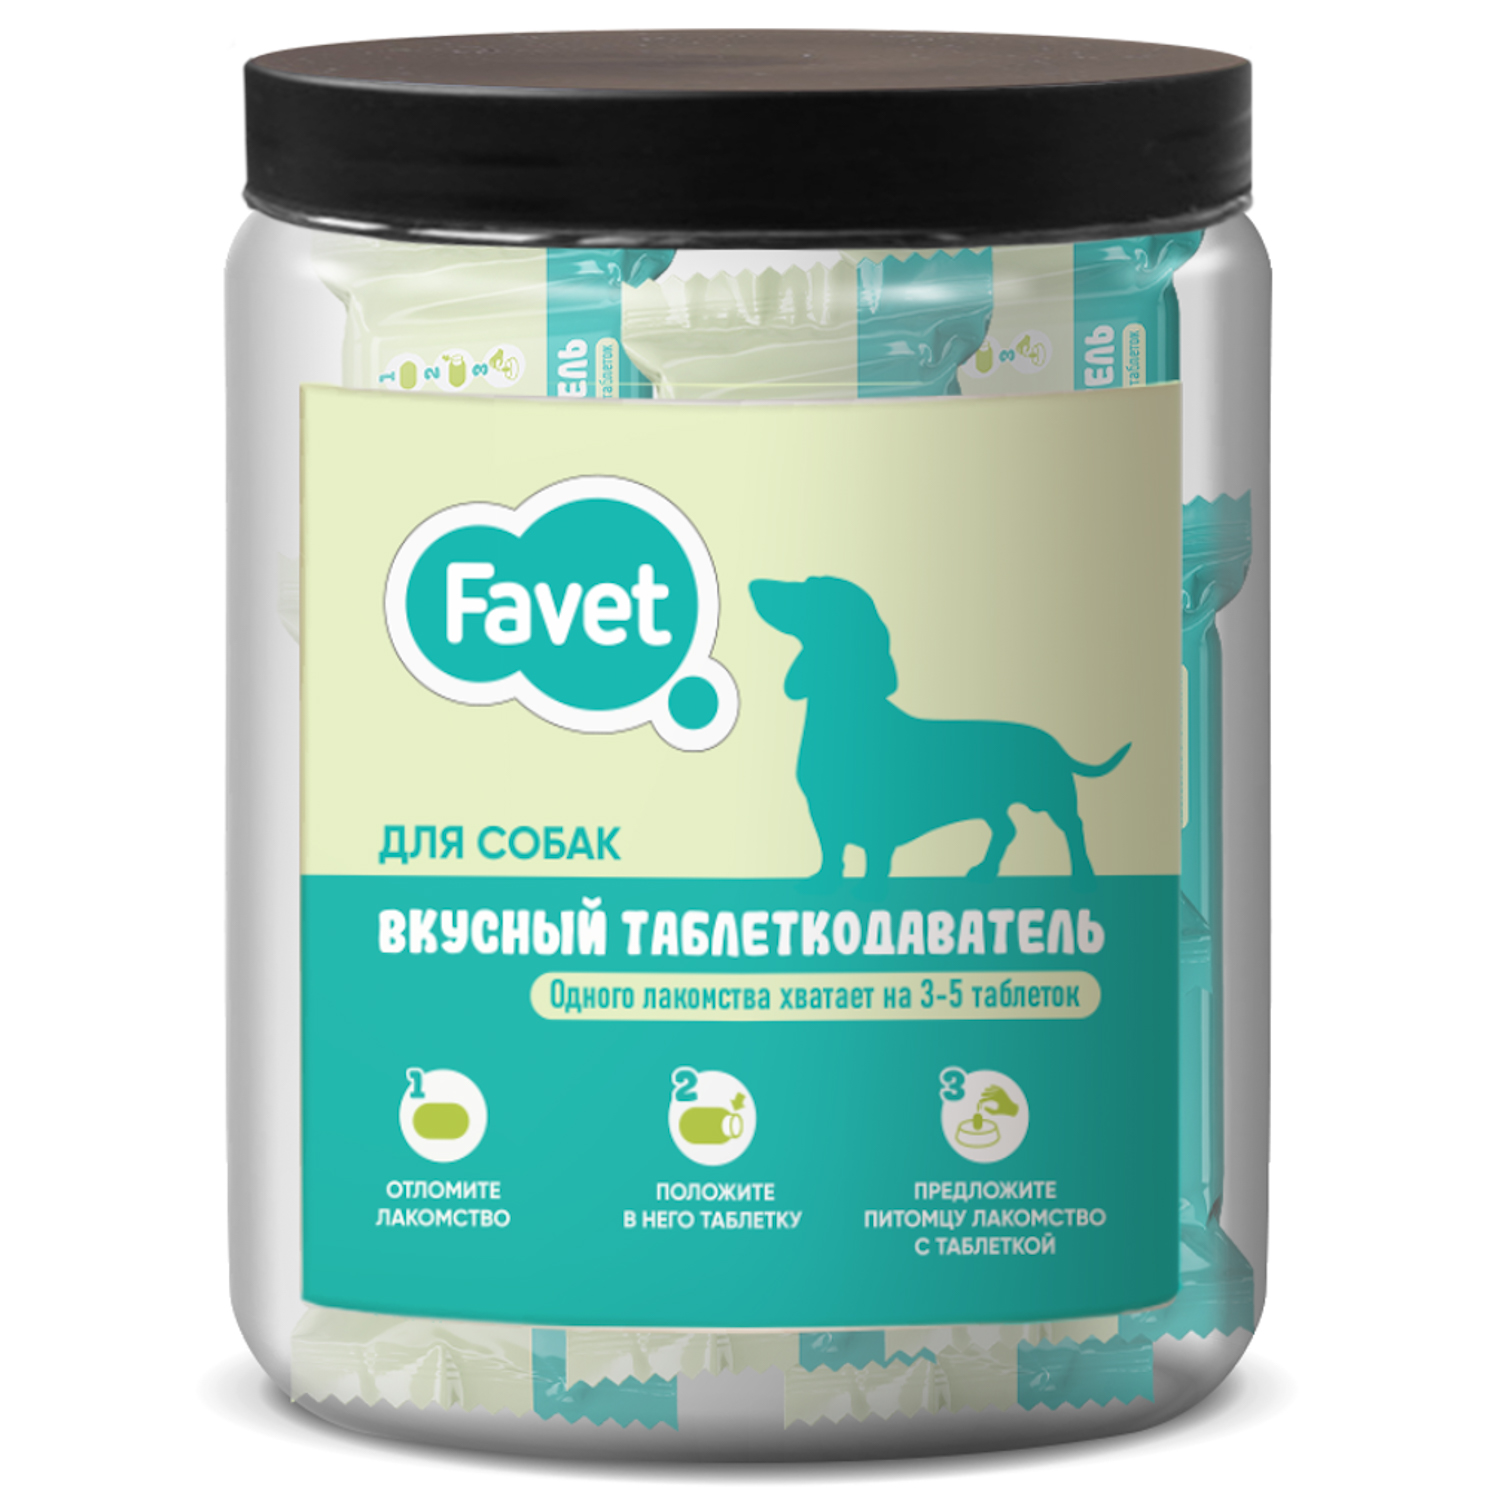 Favet Вкусный таблеткодаватель для собак (12 шт.), ПЭТ-банка